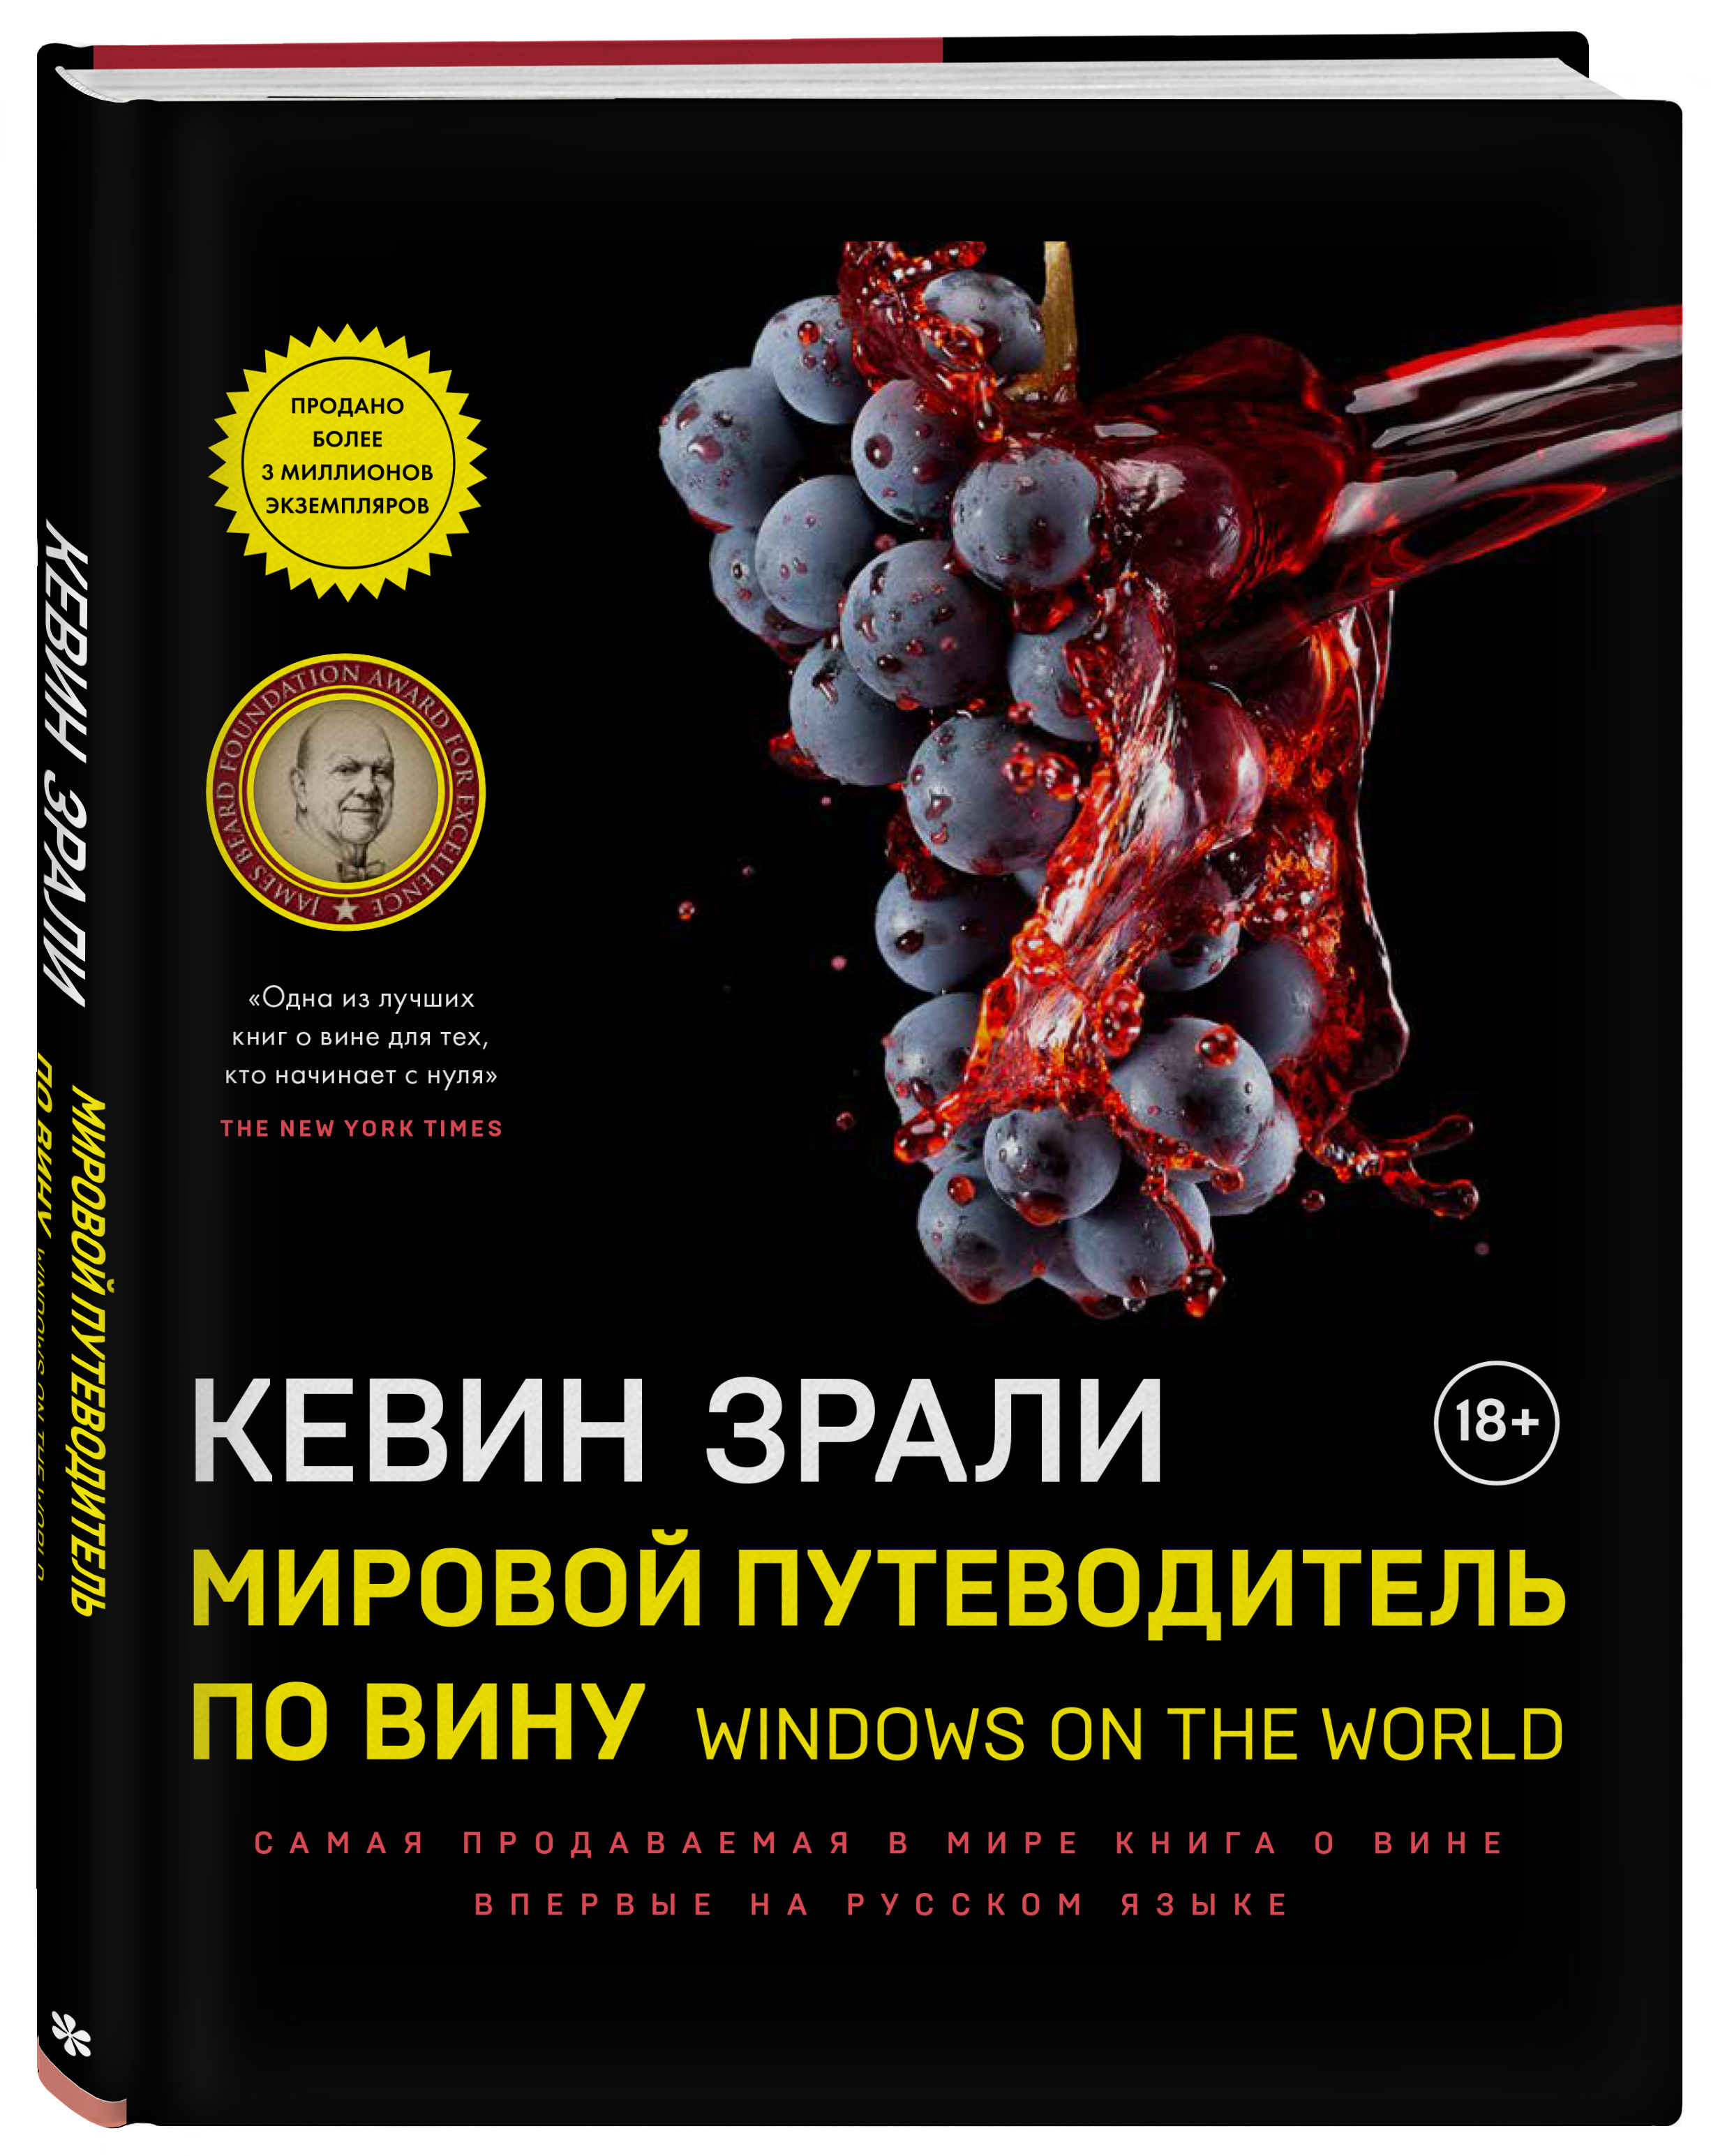 Мировой путеводитель по вину. Windows on the world. Зрали Кевин